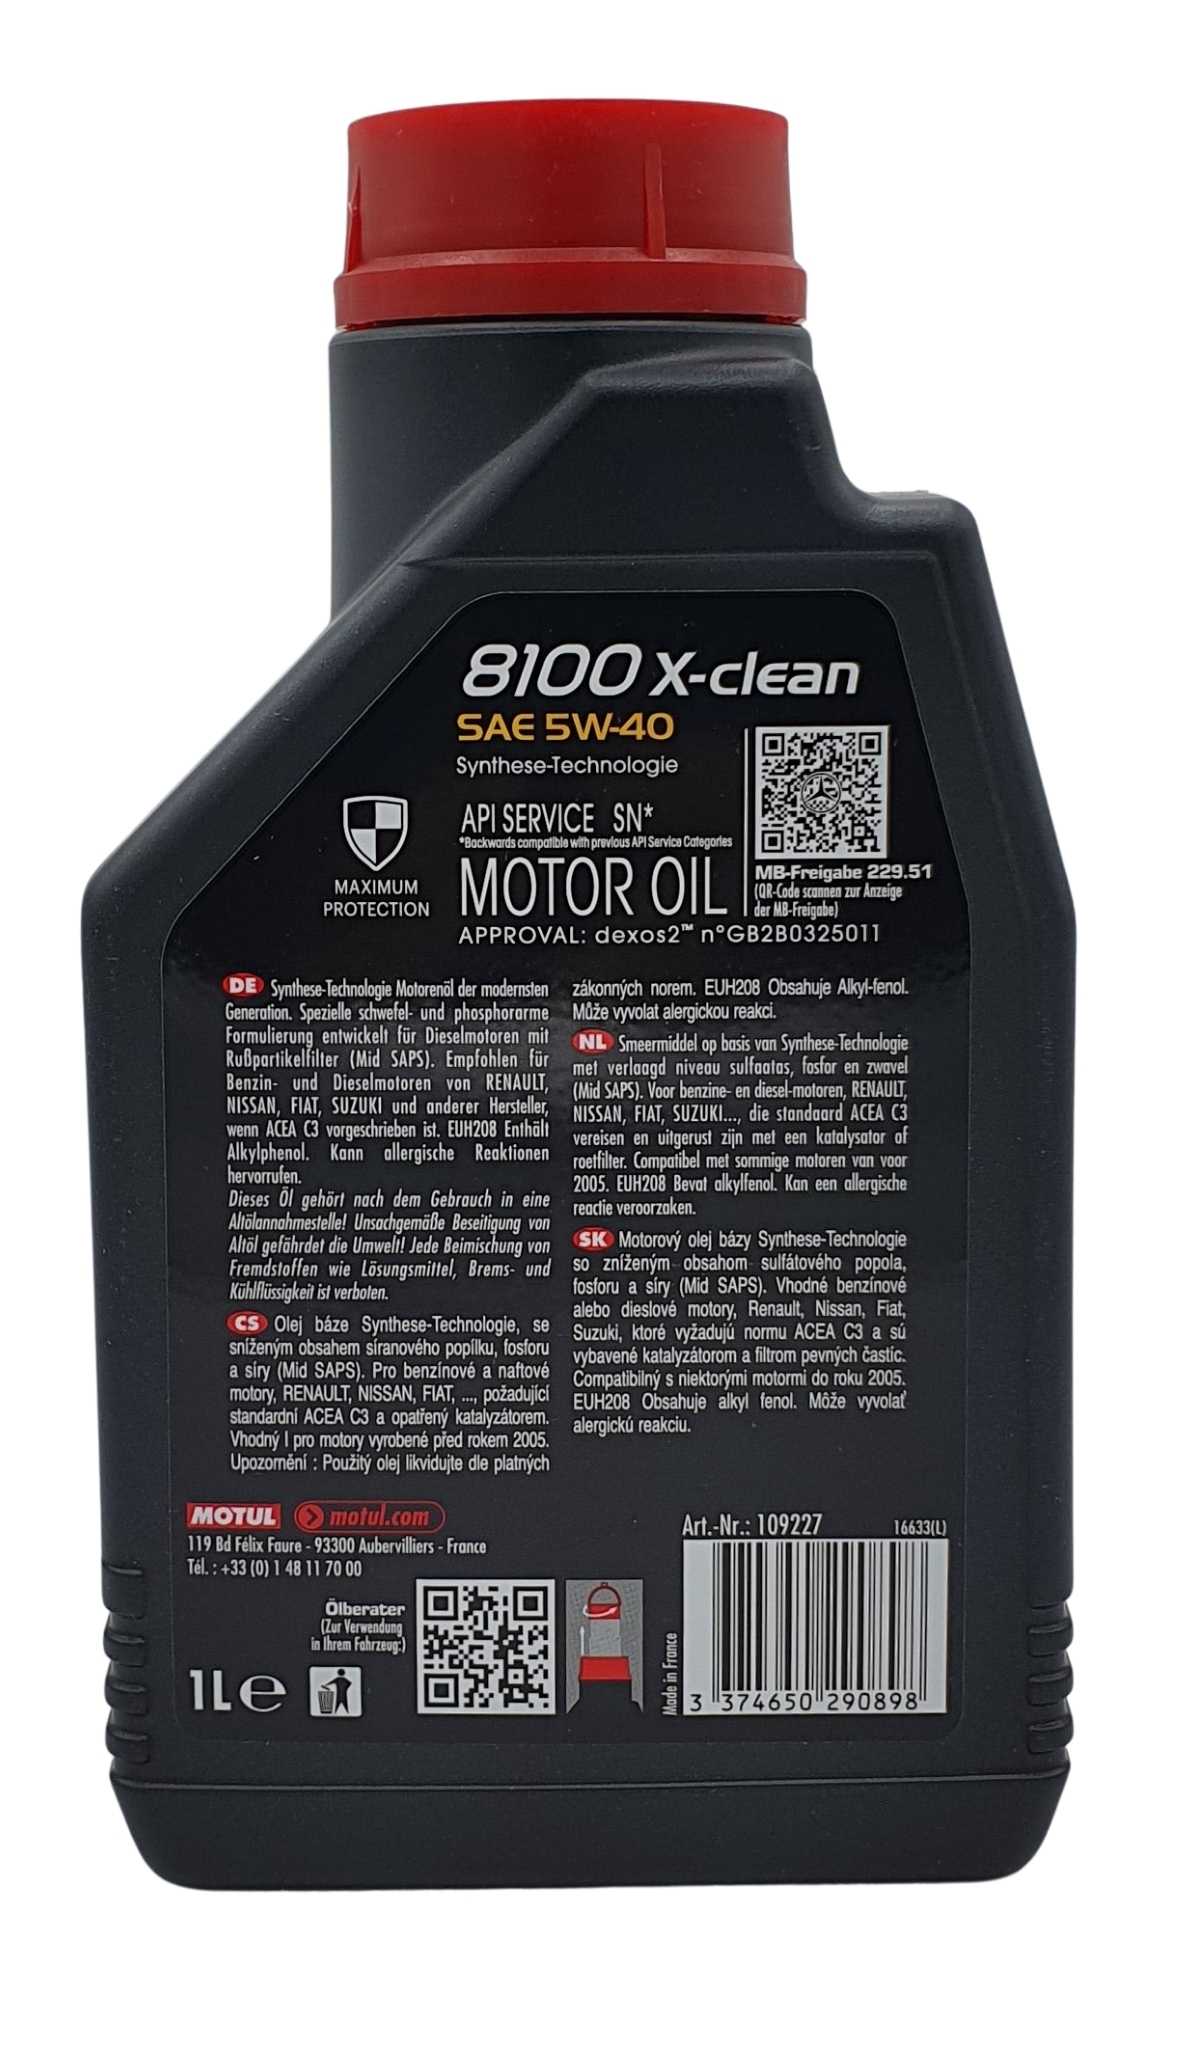 Motul 8100 X-clean 5W-40 1 Liter